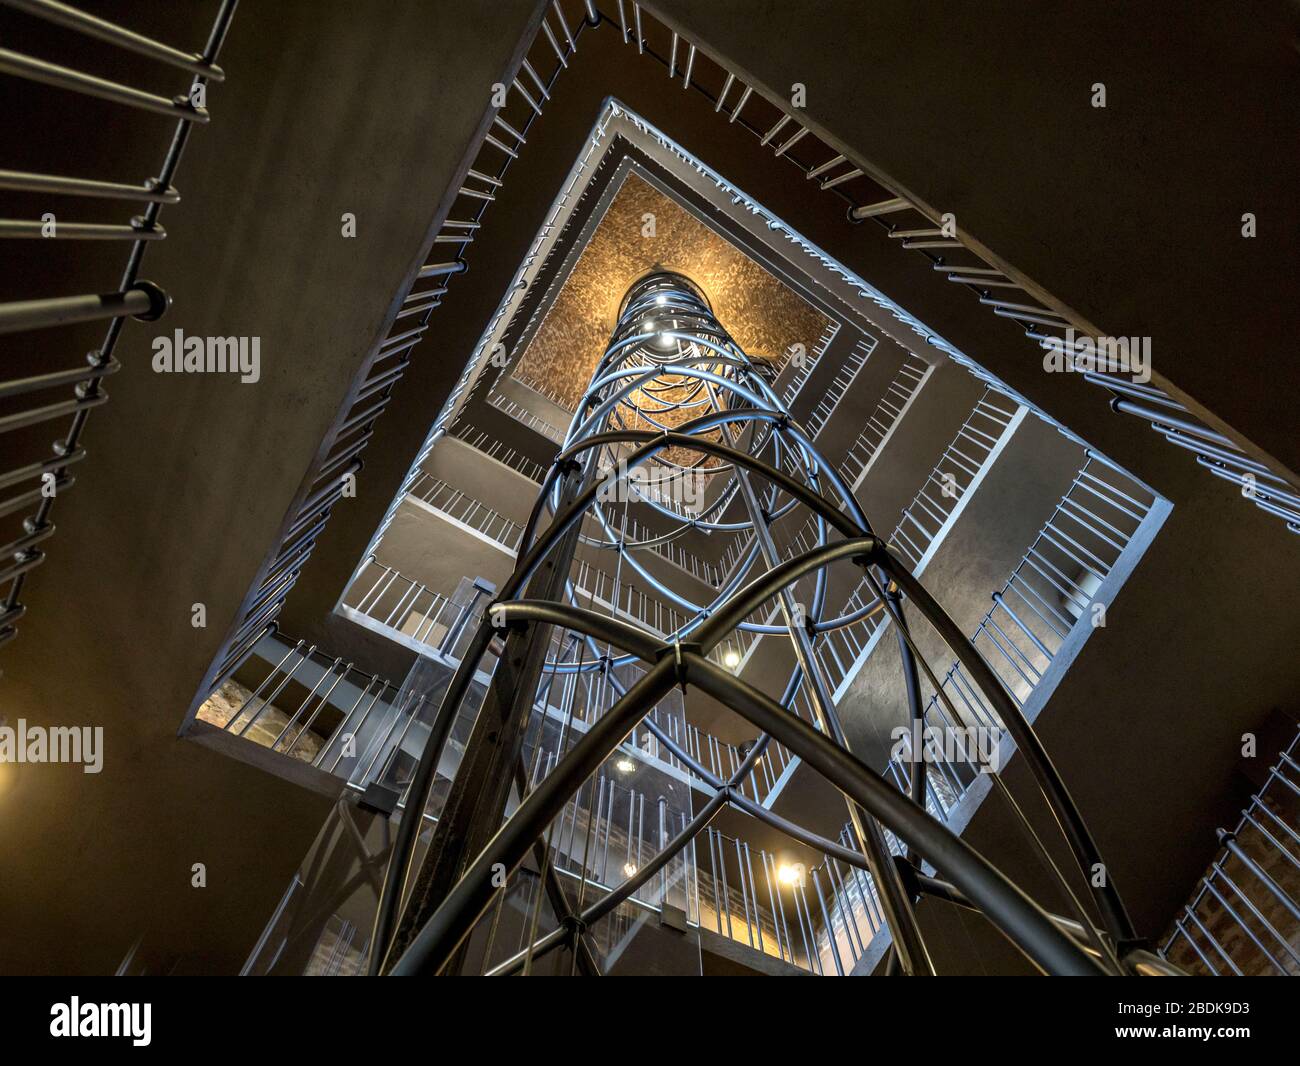 L'ascenseur futuriste et l'escalier à l'intérieur de la tour de l'horloge de la vieille ville, Prague, République tchèque. Banque D'Images